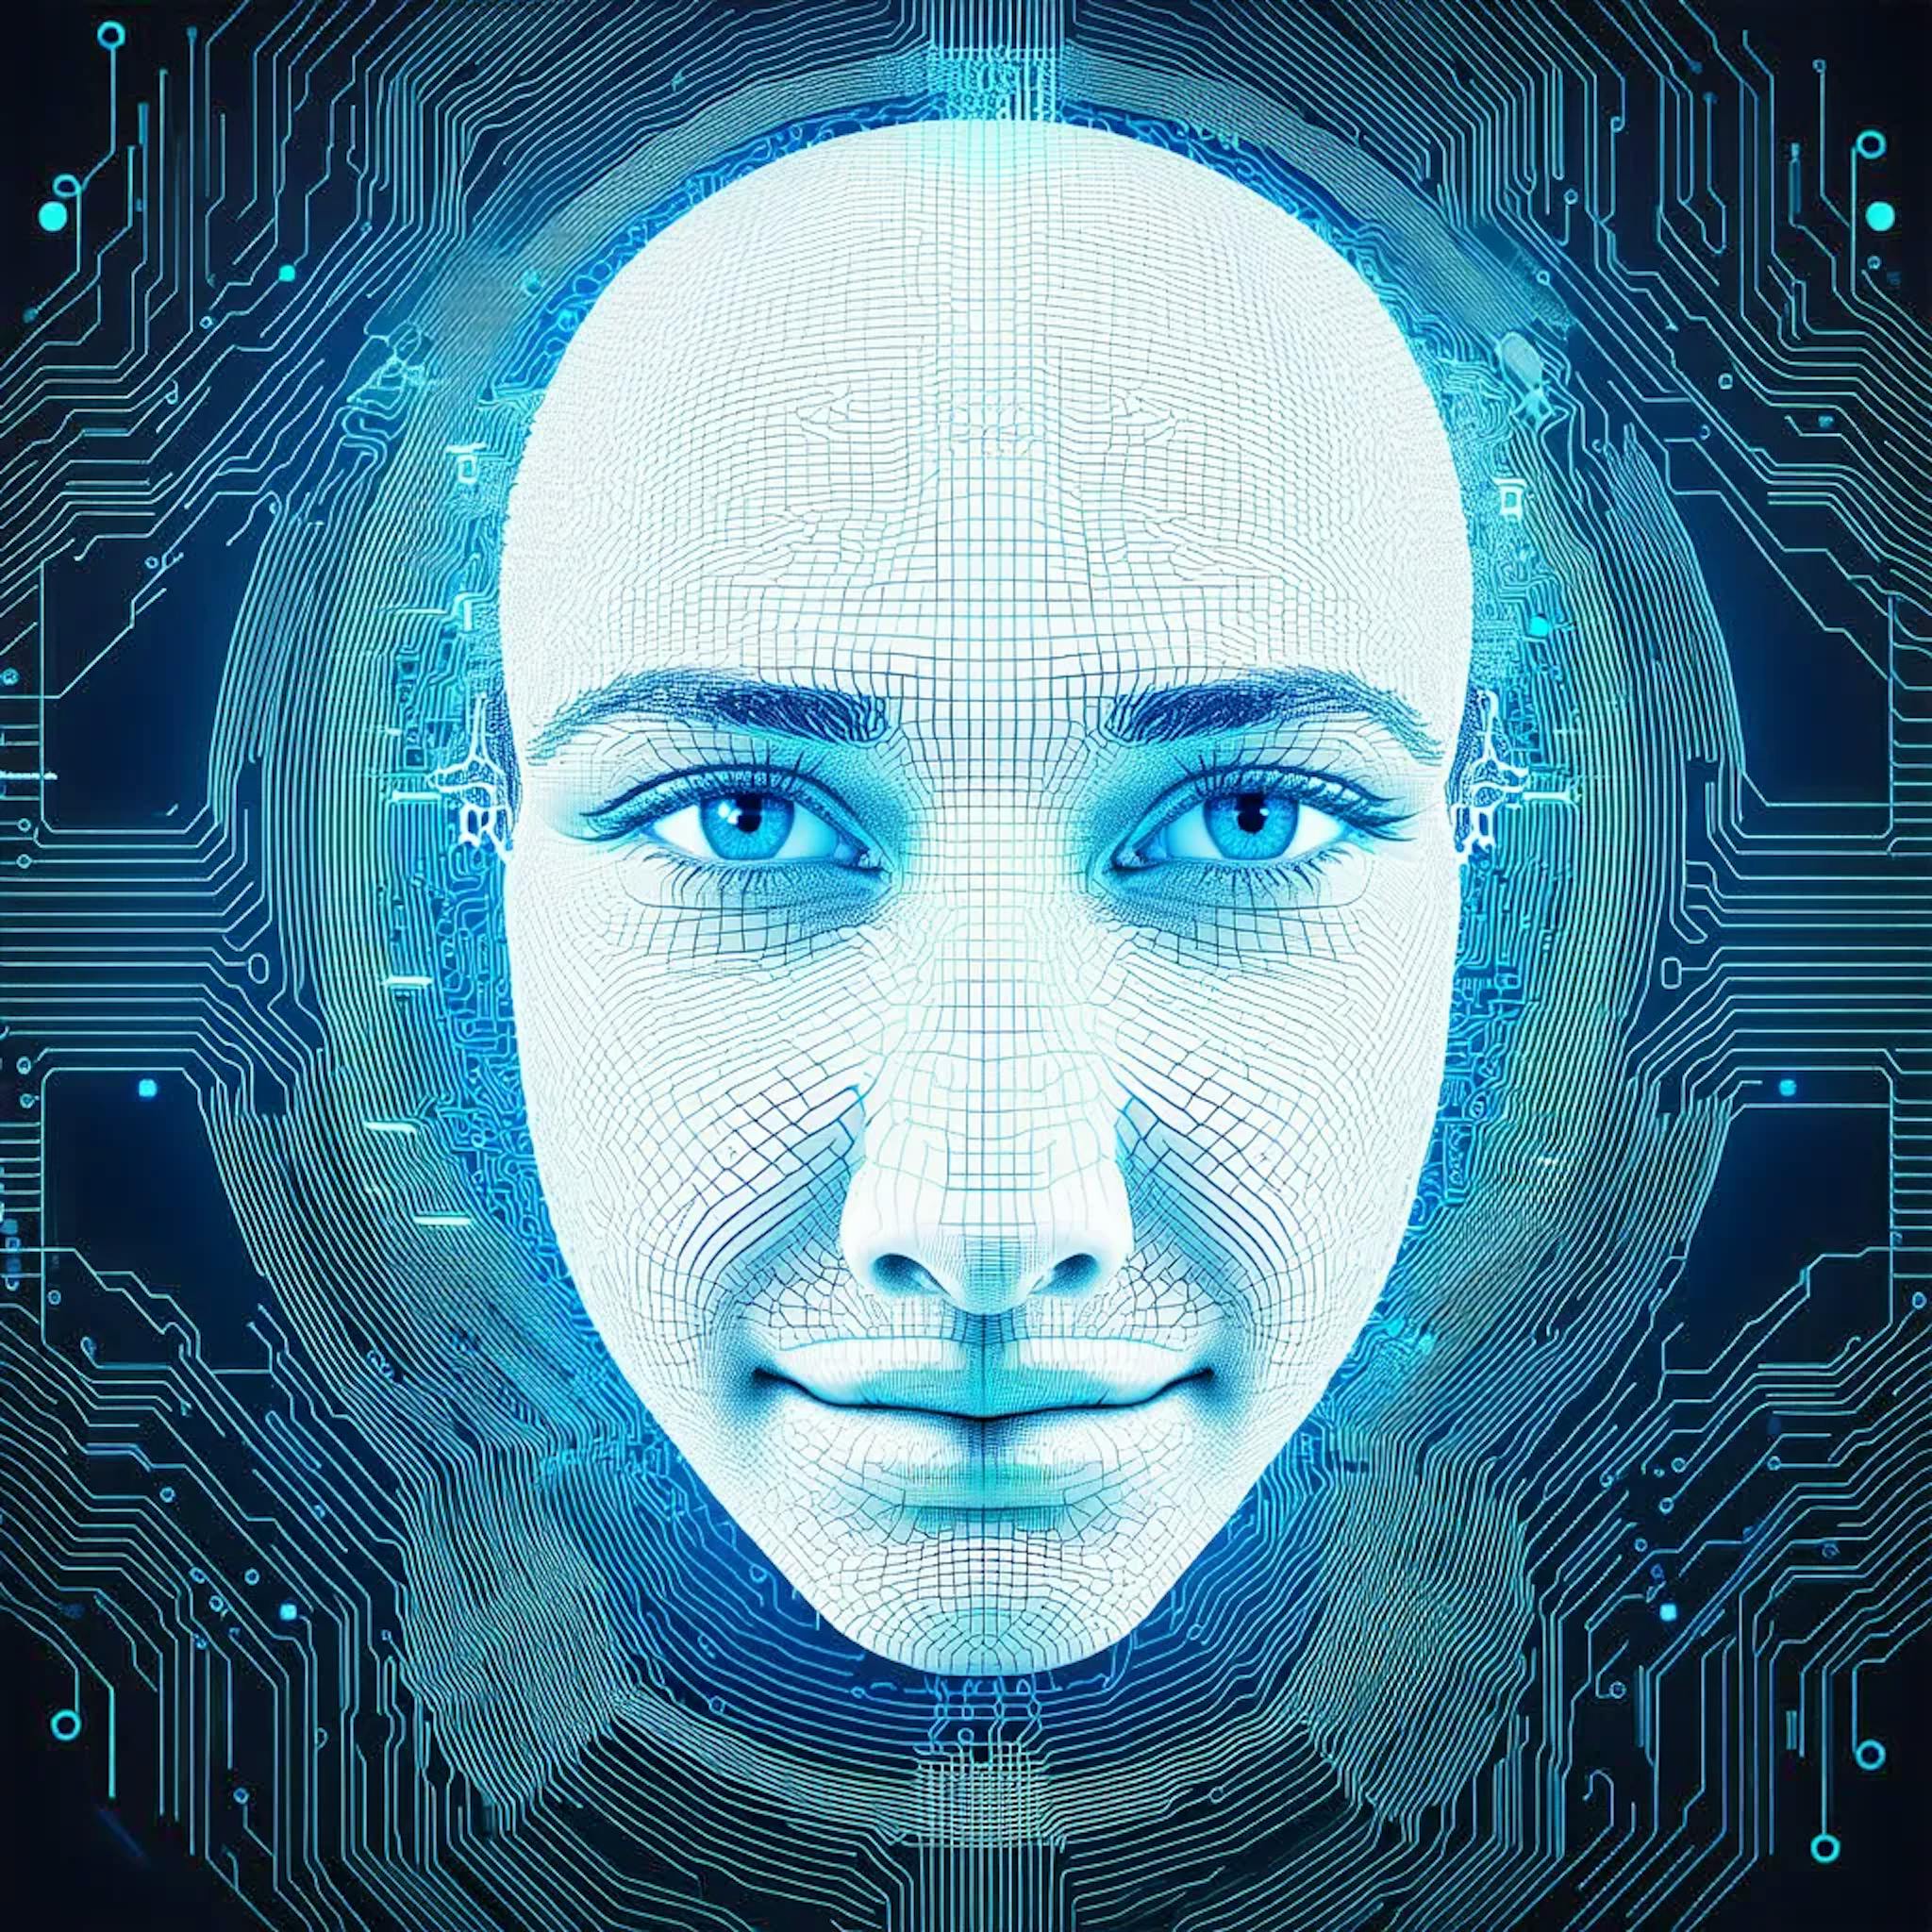 featured image - "L'IA peut améliorer les processus de collecte, d'analyse, de prédiction et d'évaluation de données"